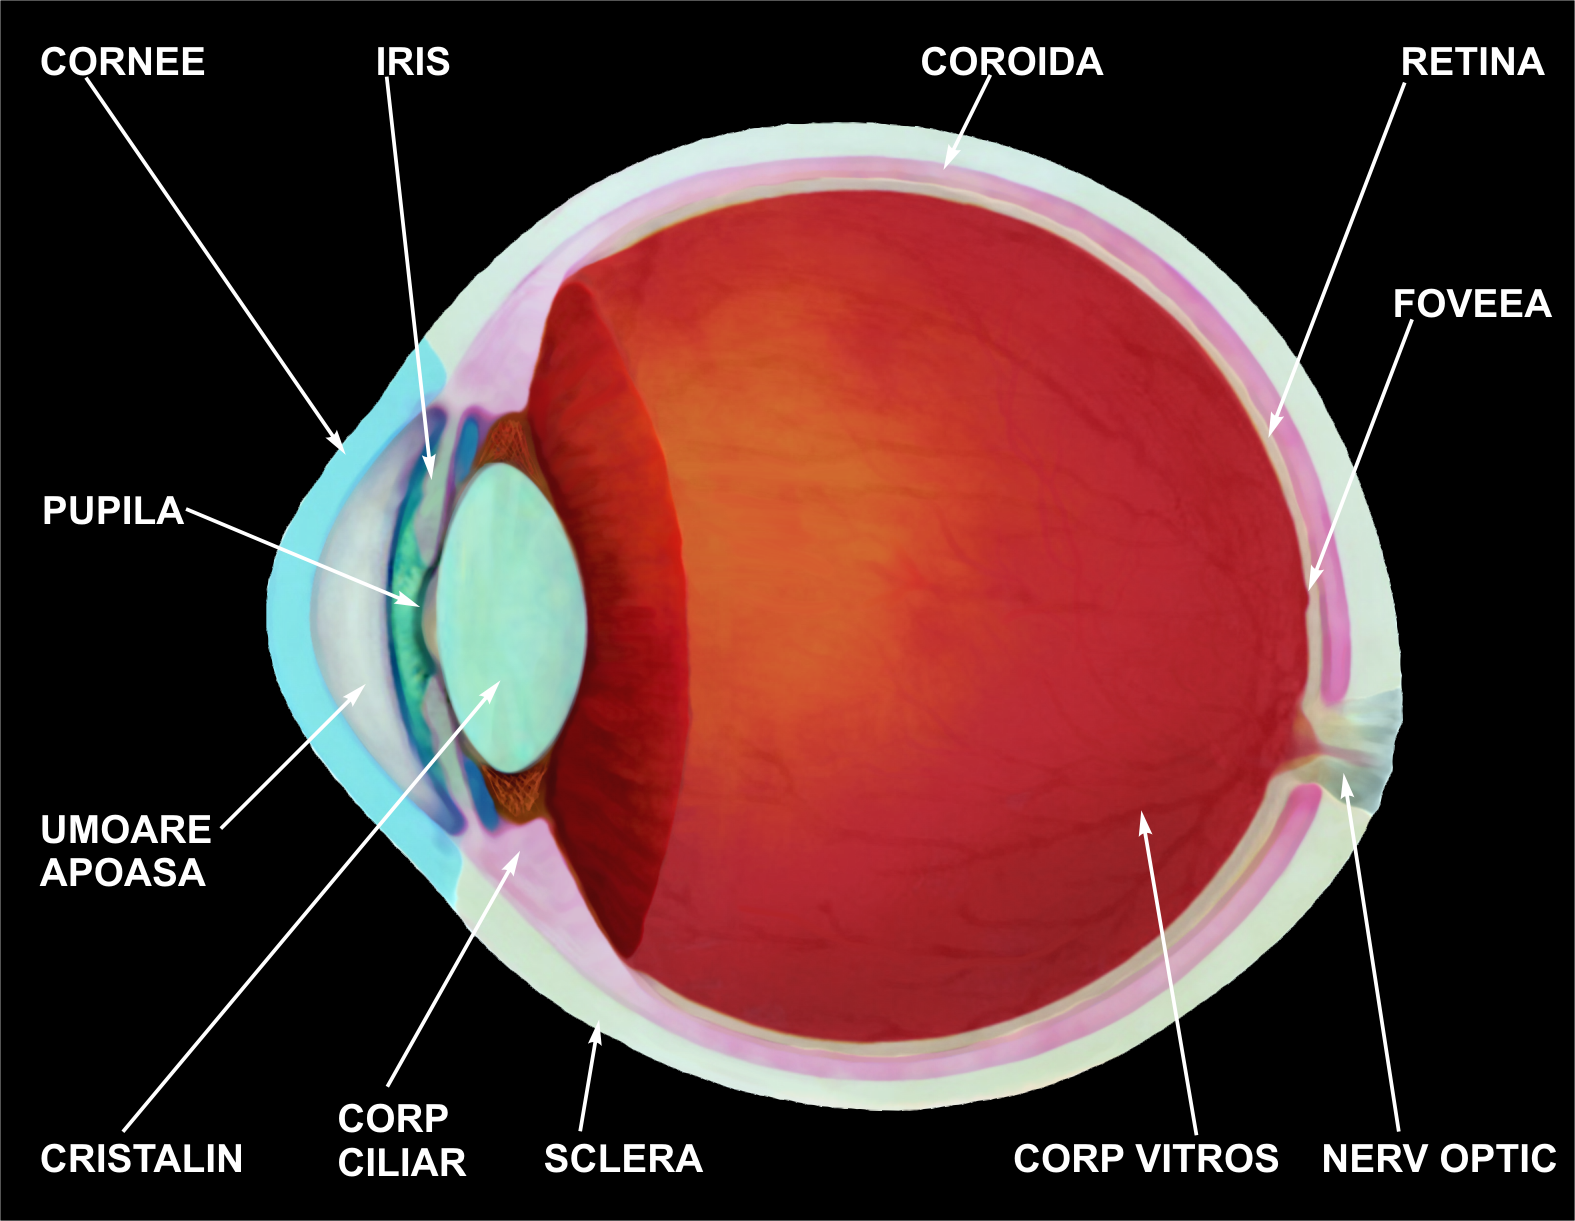 Ochiul uman si vederea - Blog de optica medicala | eventisimo.ro